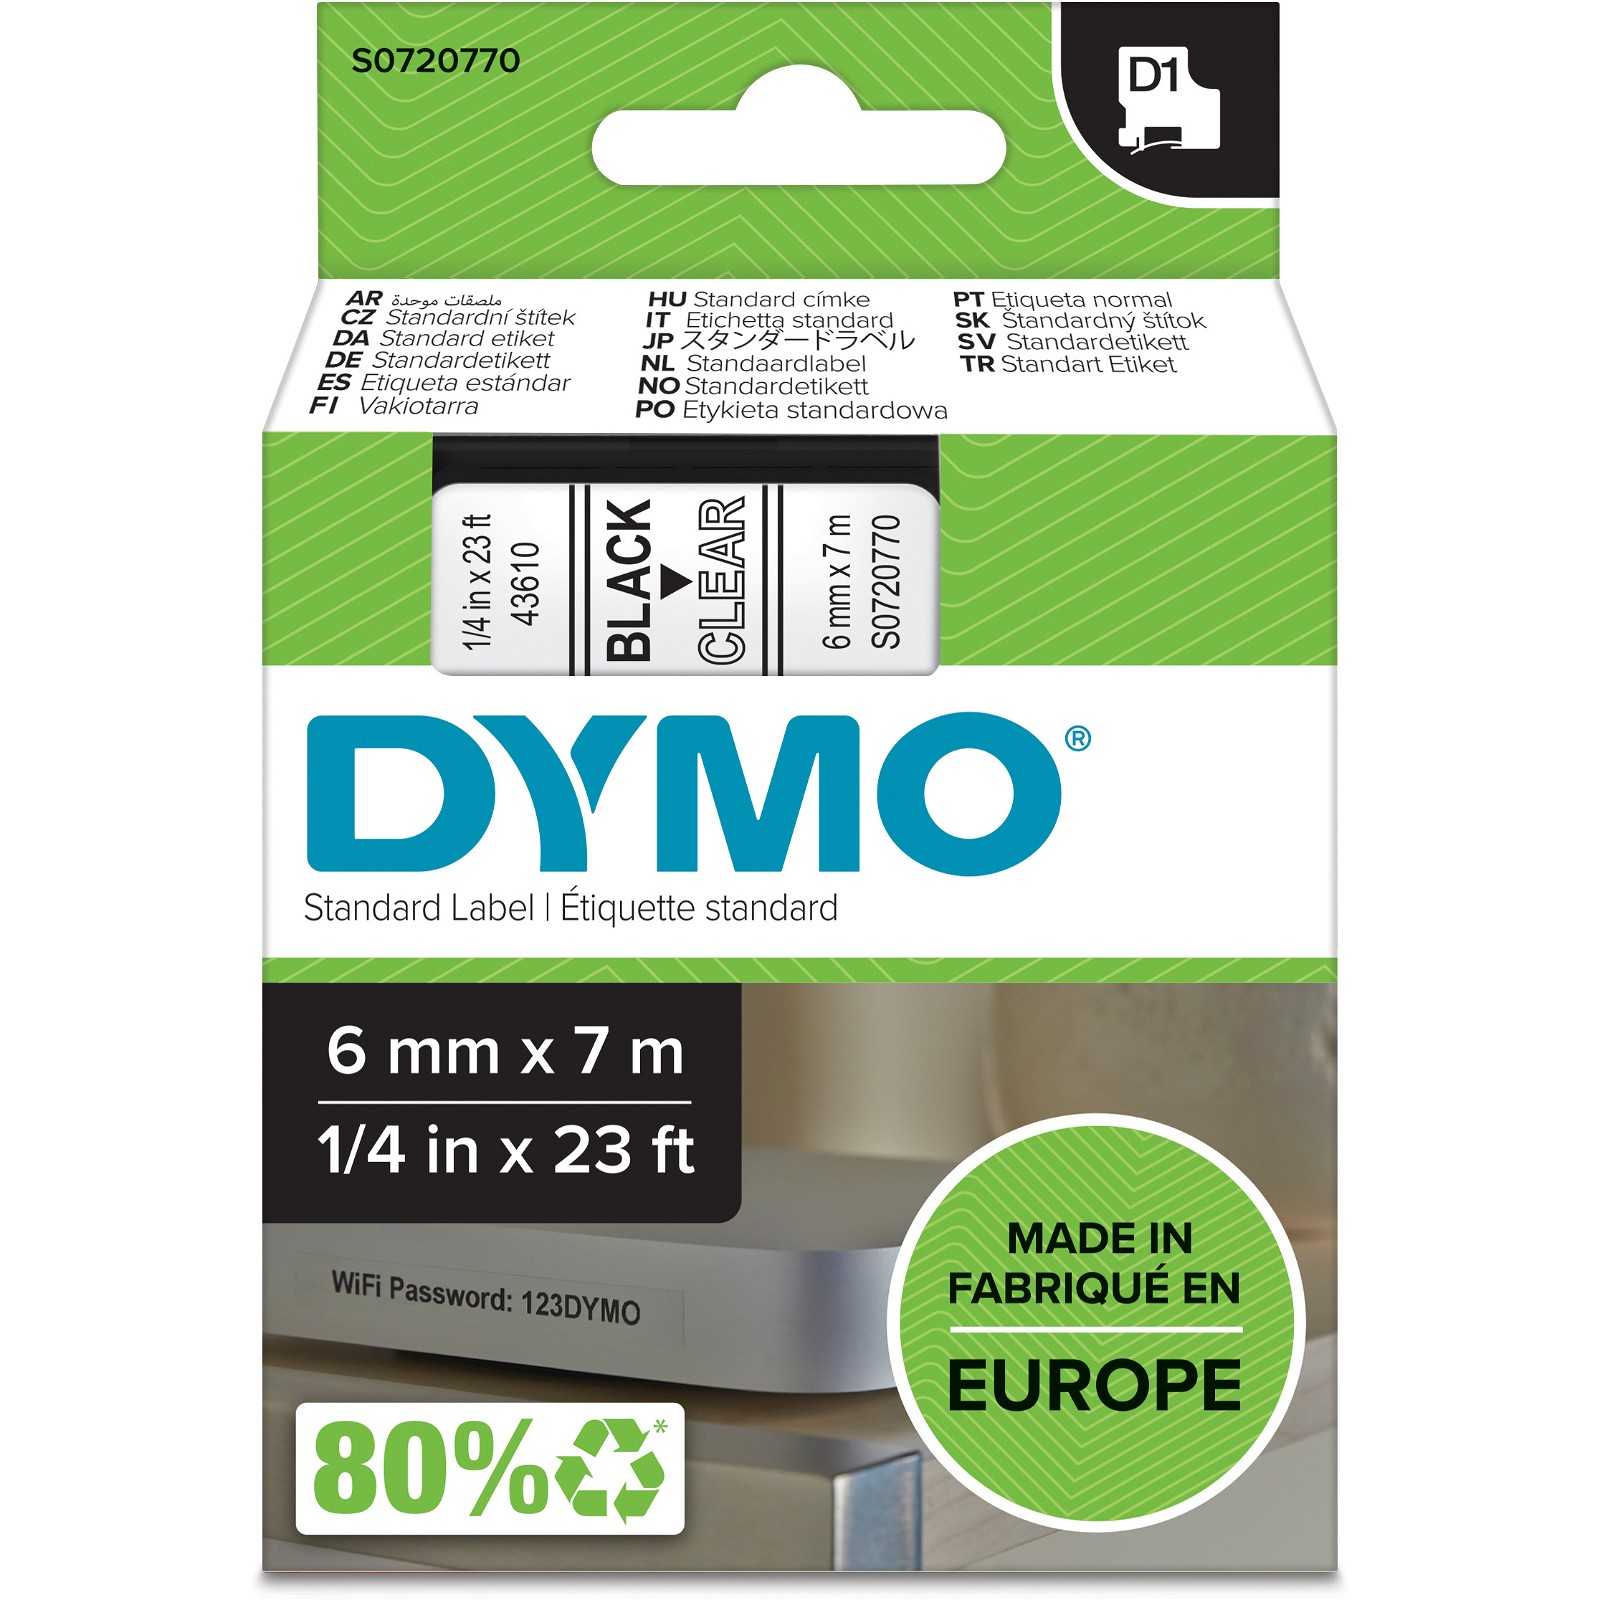 Dymo D1 polyester tape sort/klar 6mm x 7m